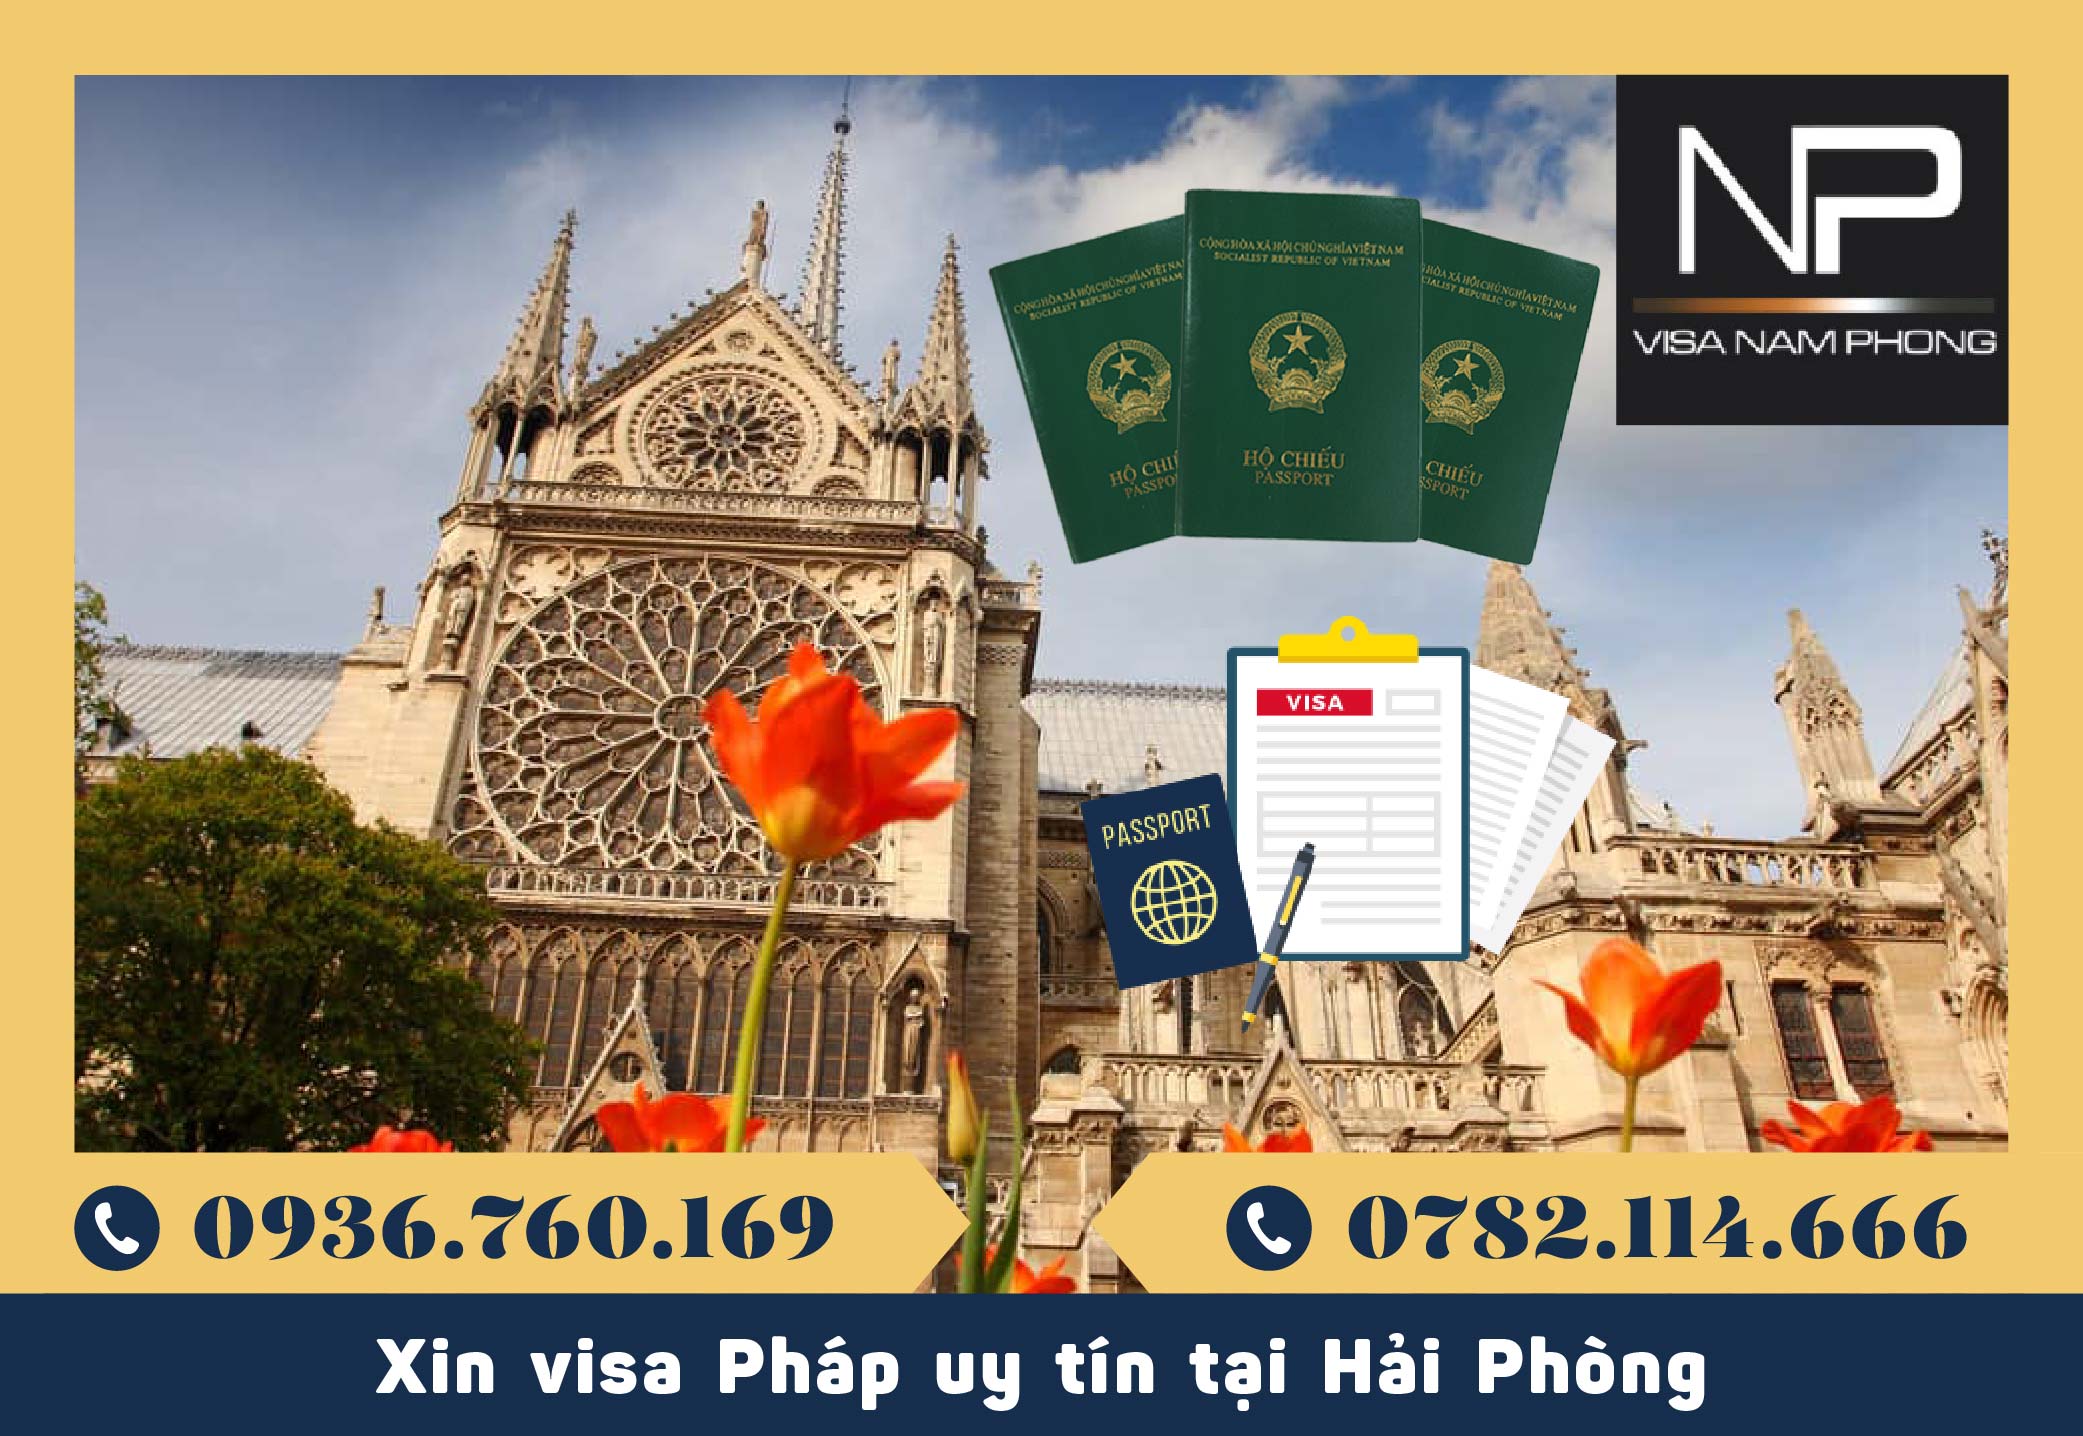 Xin visa Pháp uy tín tại Hải Phòng